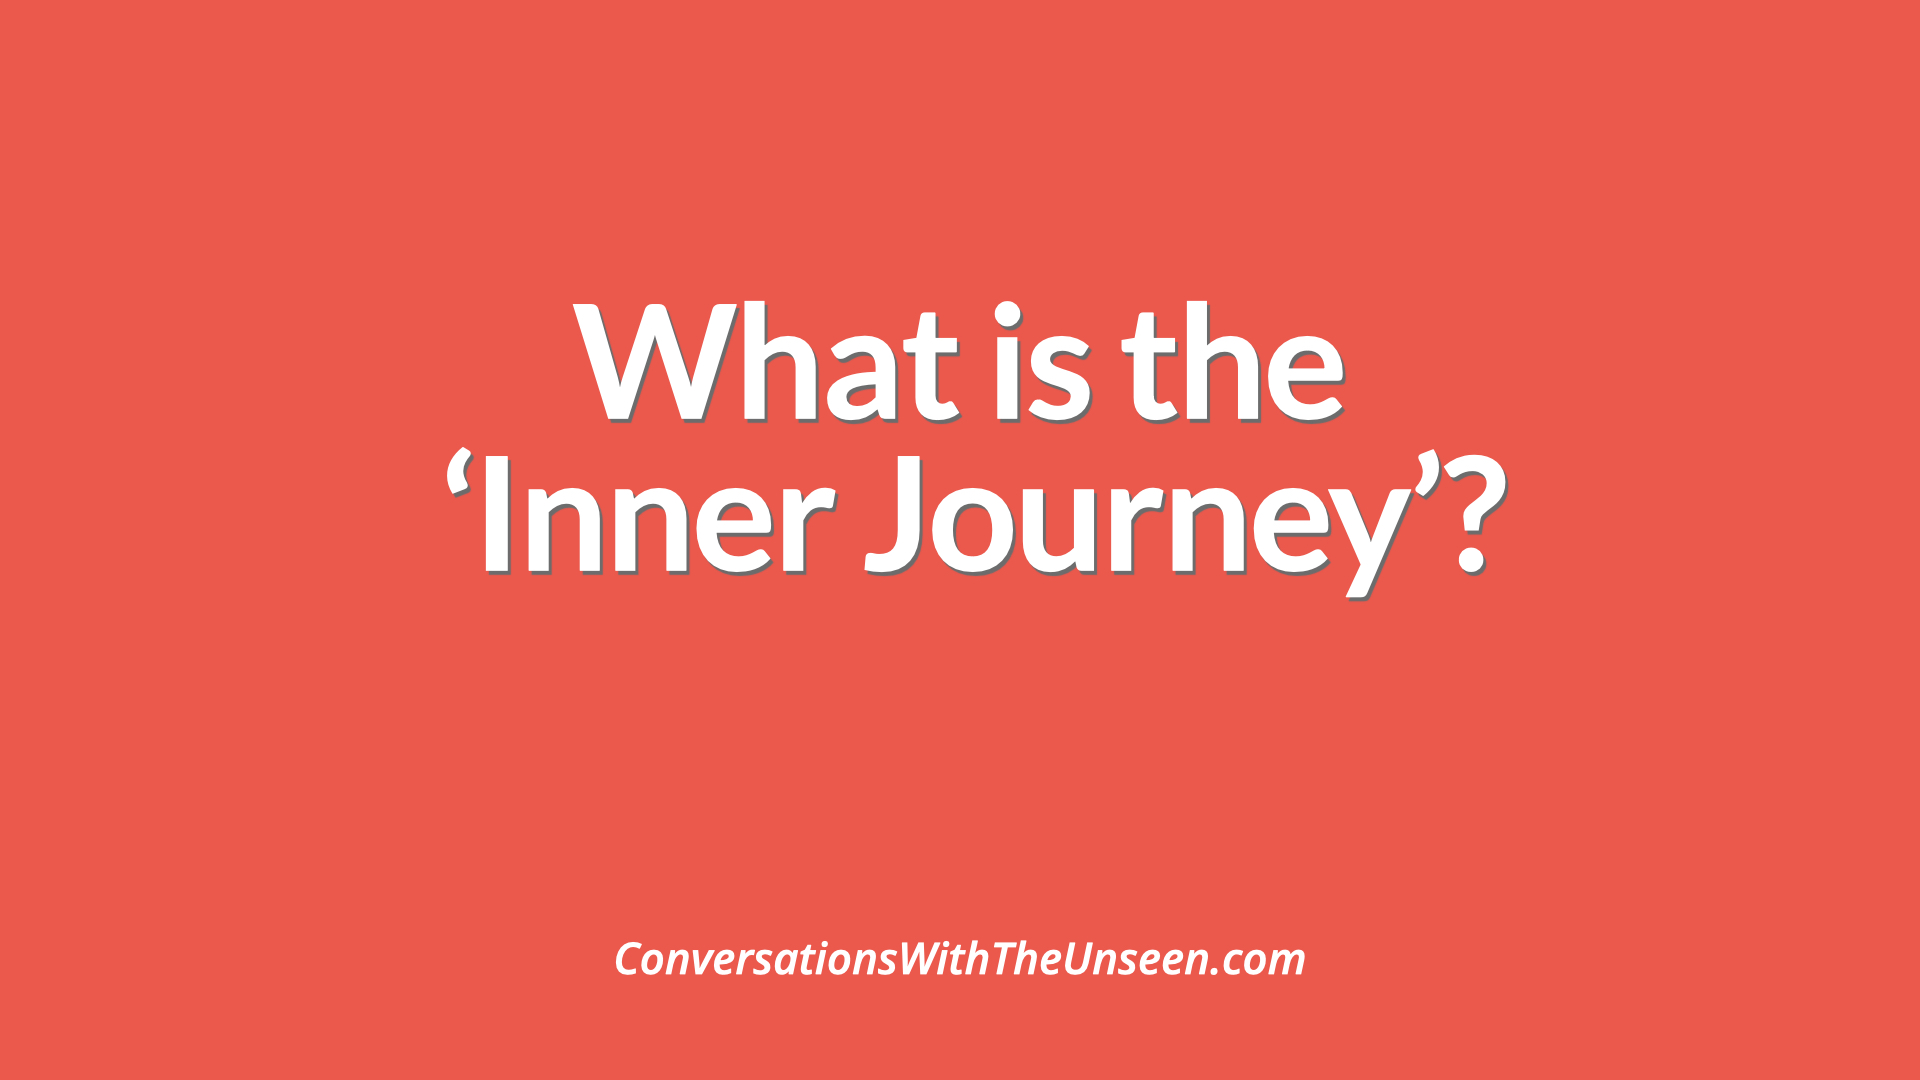 inner journey definition